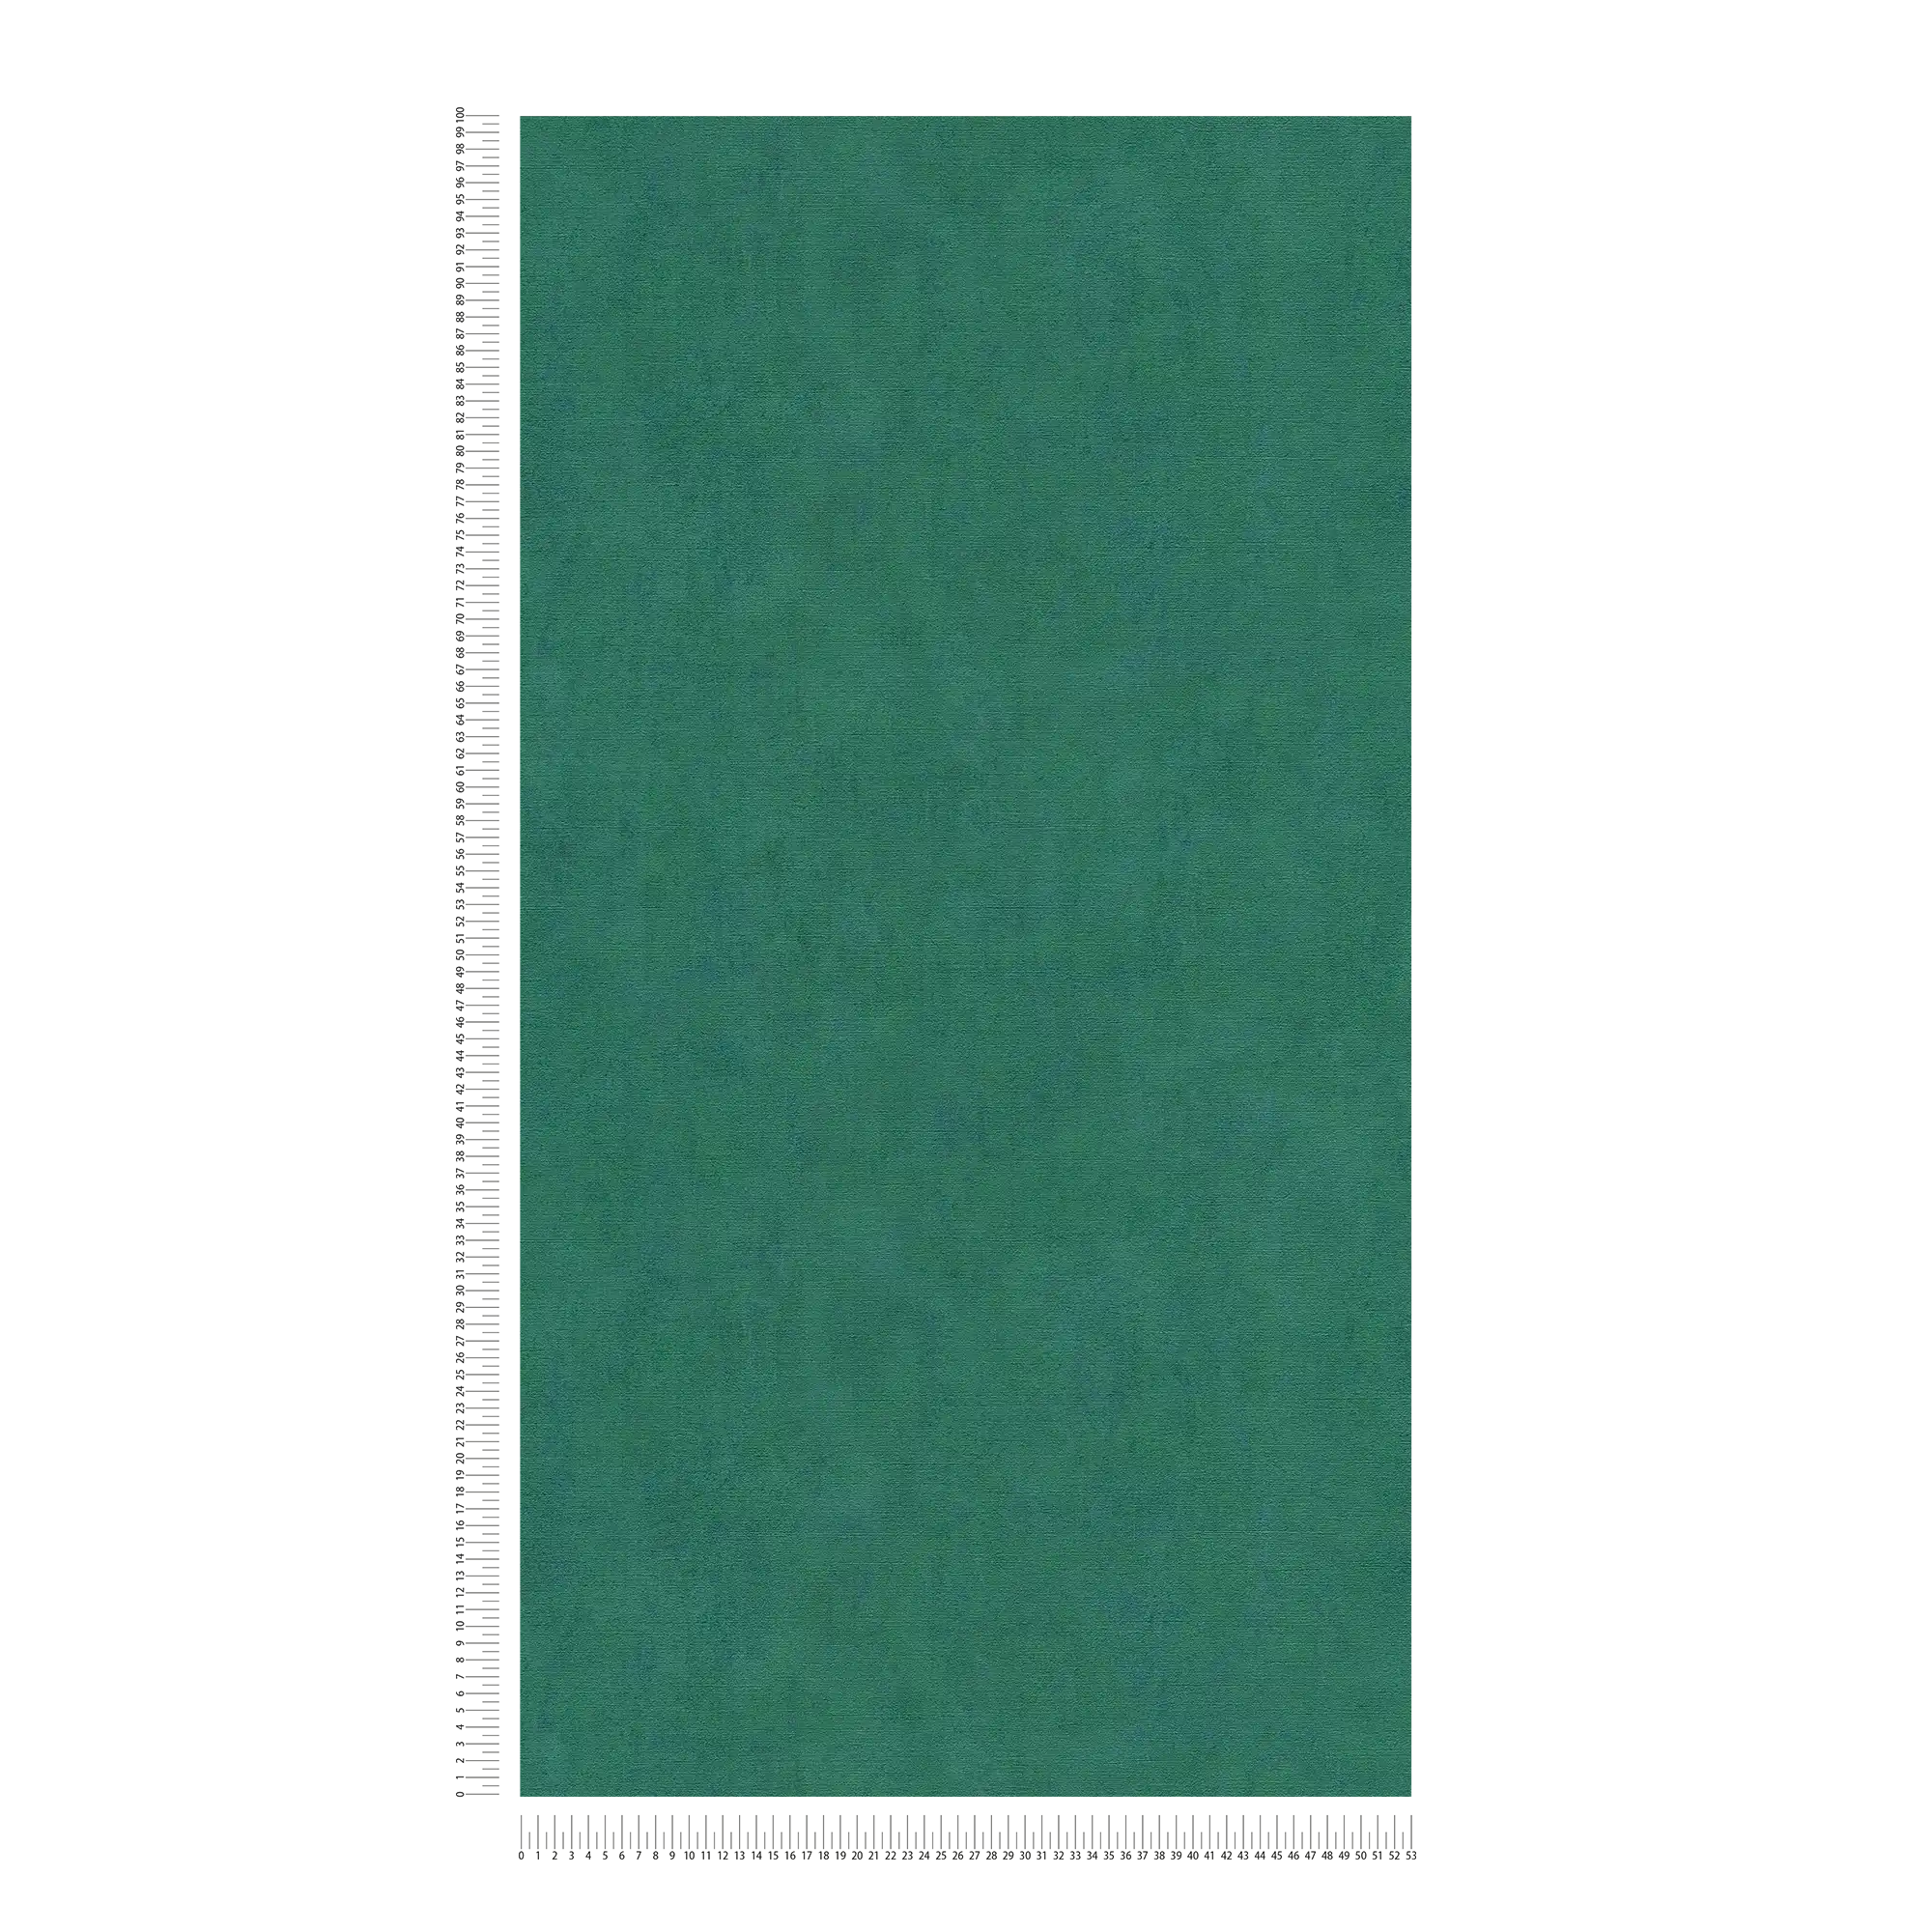             behang smaragdgroen gevlekt met blauw metallic effect - blauw, groen
        